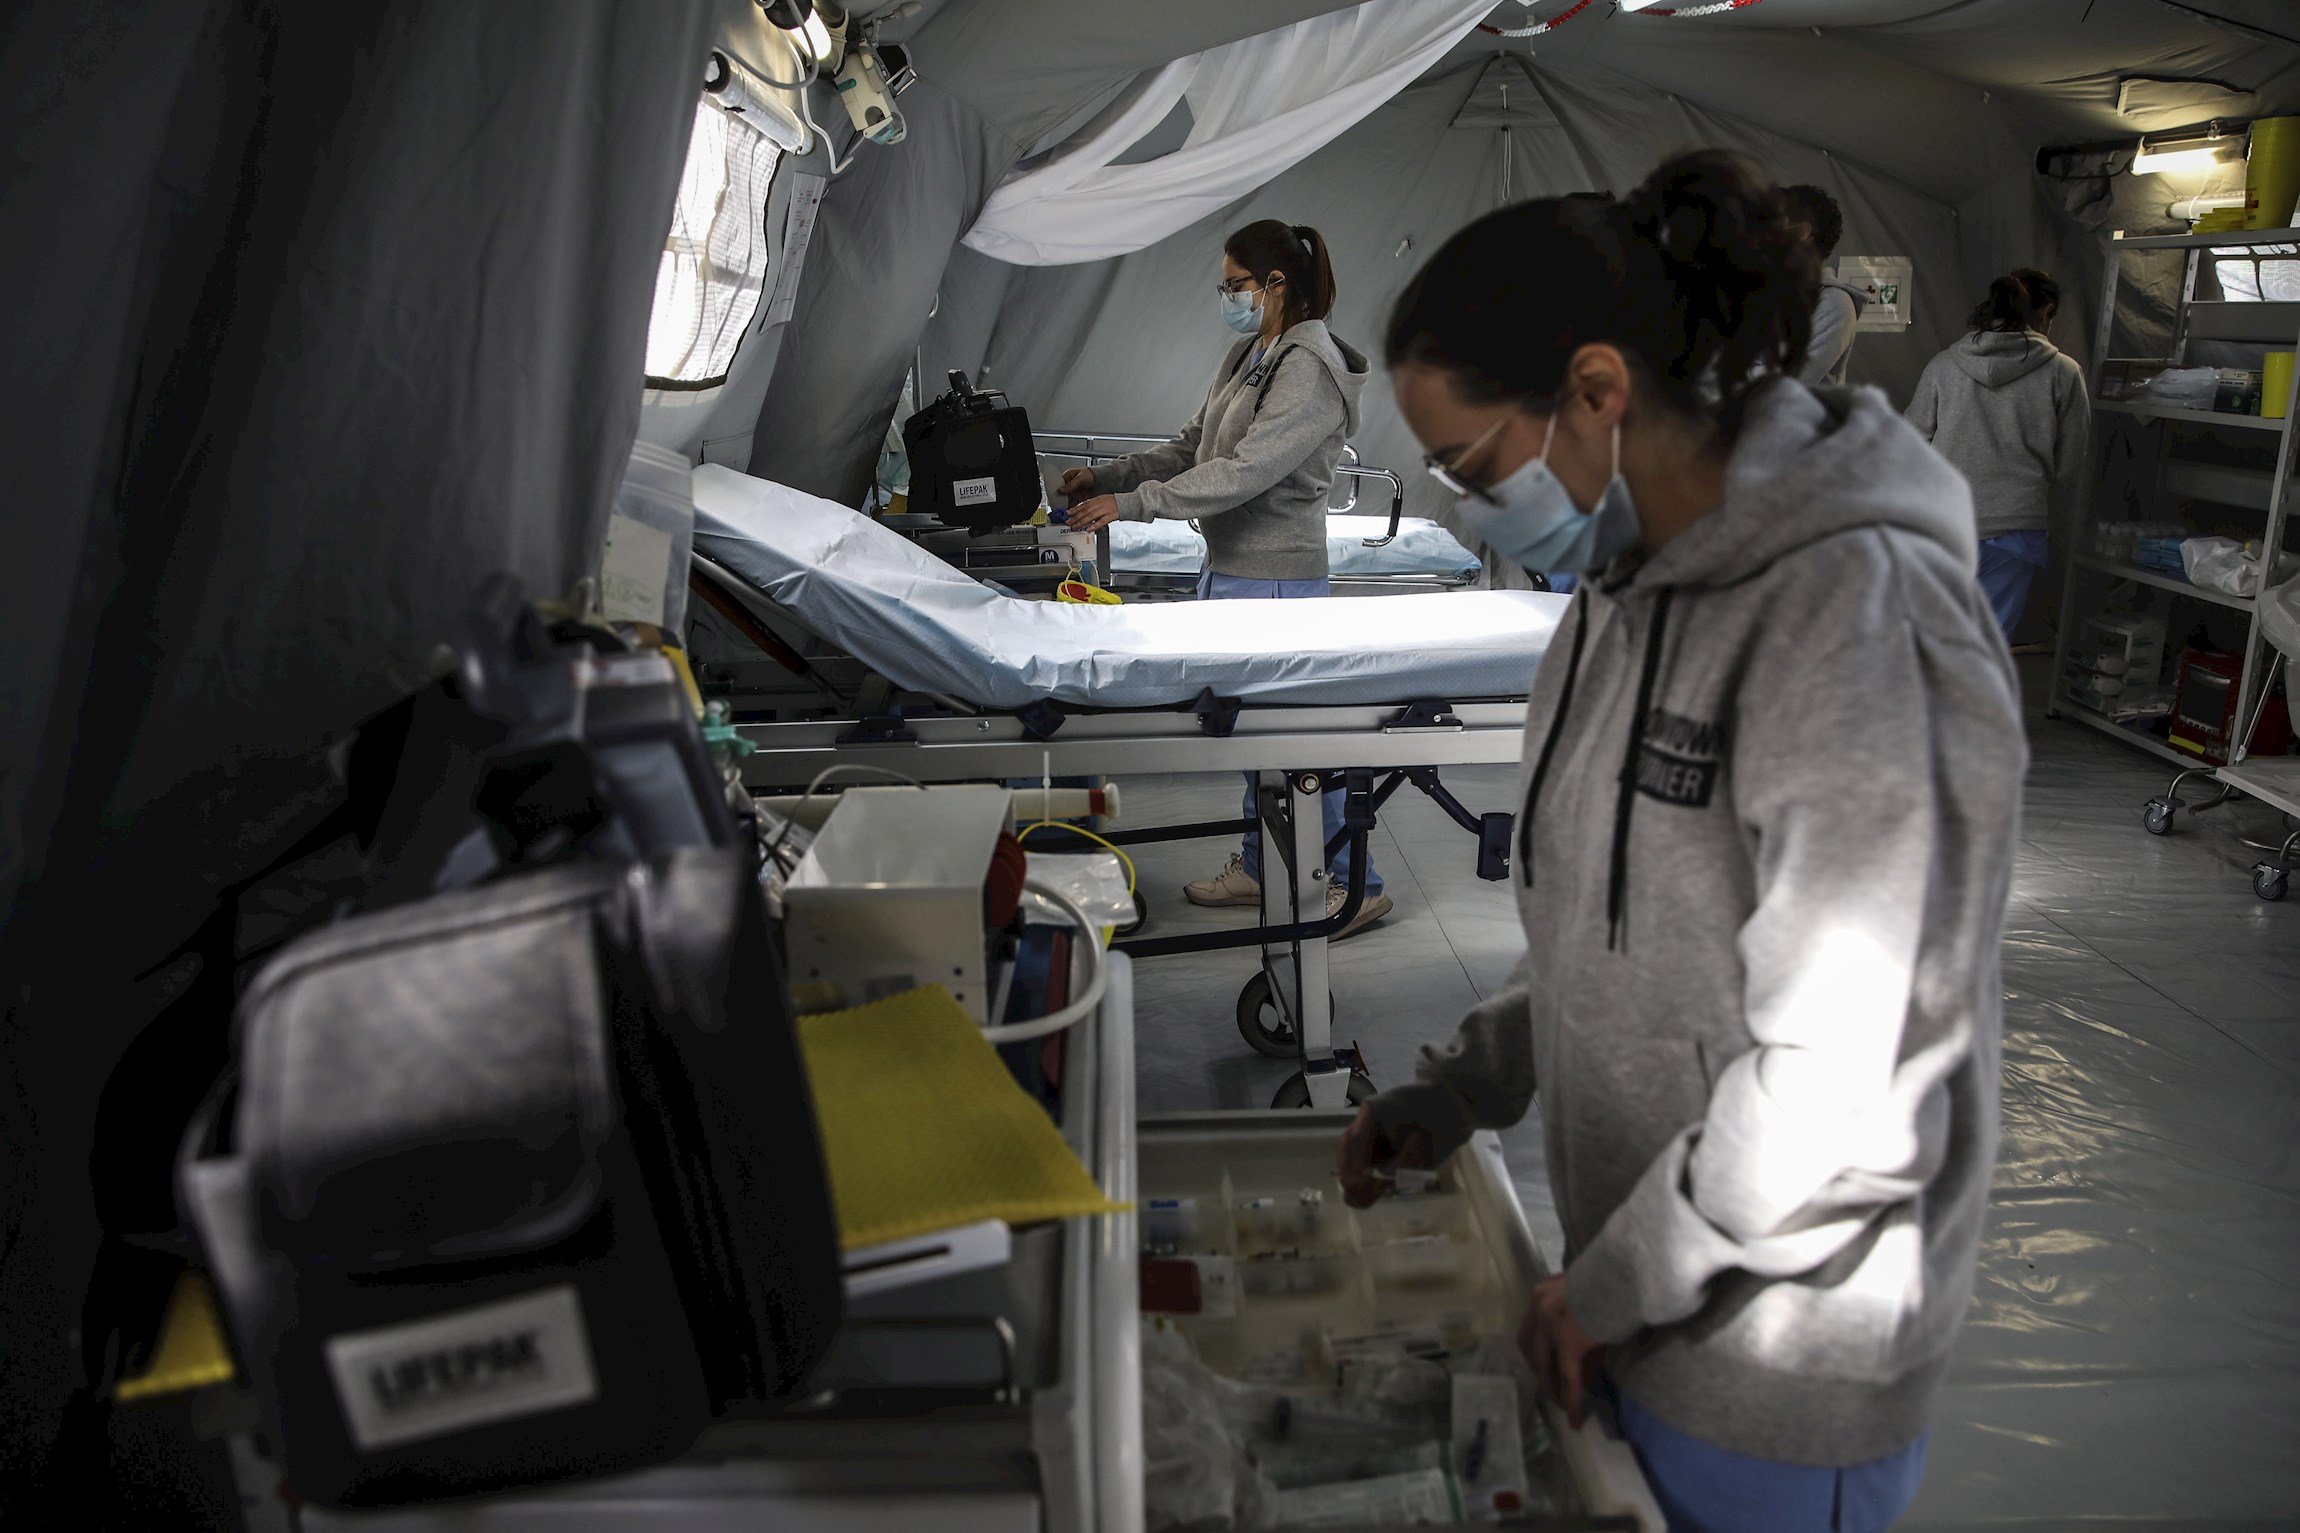 Portugal, saturat, sospesa enviar pacients Covid a altres països